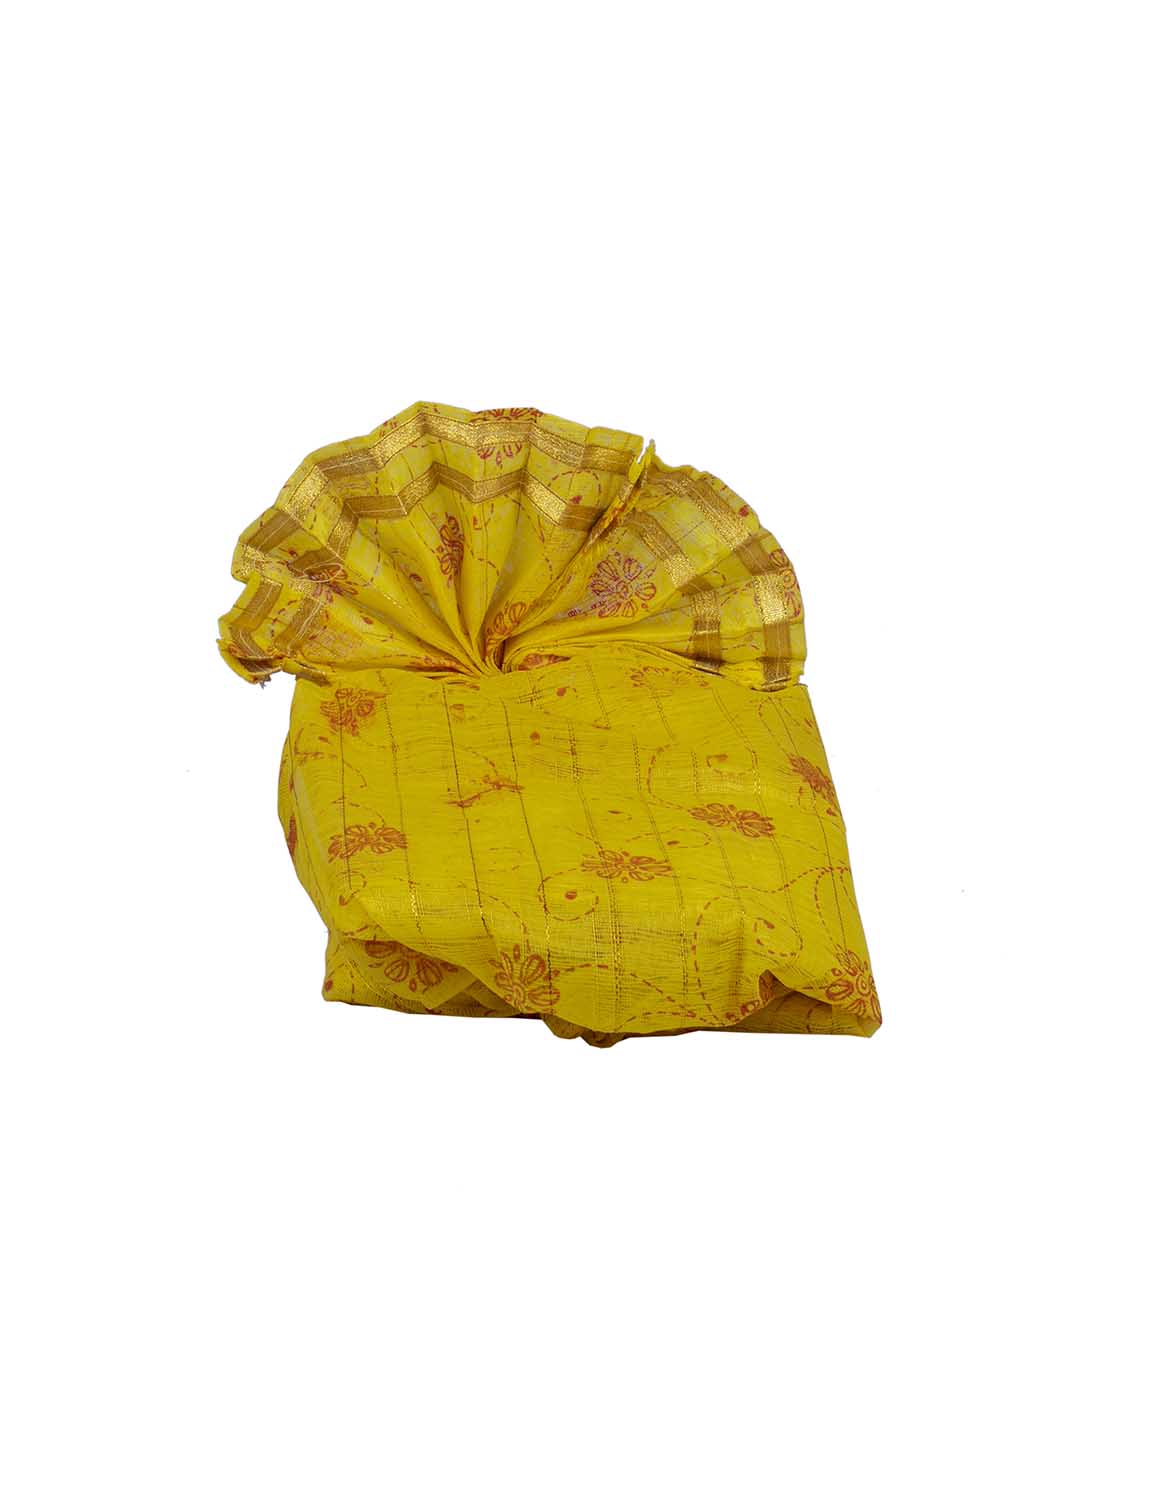 Unstitched Printed Dark Yellow Pheta